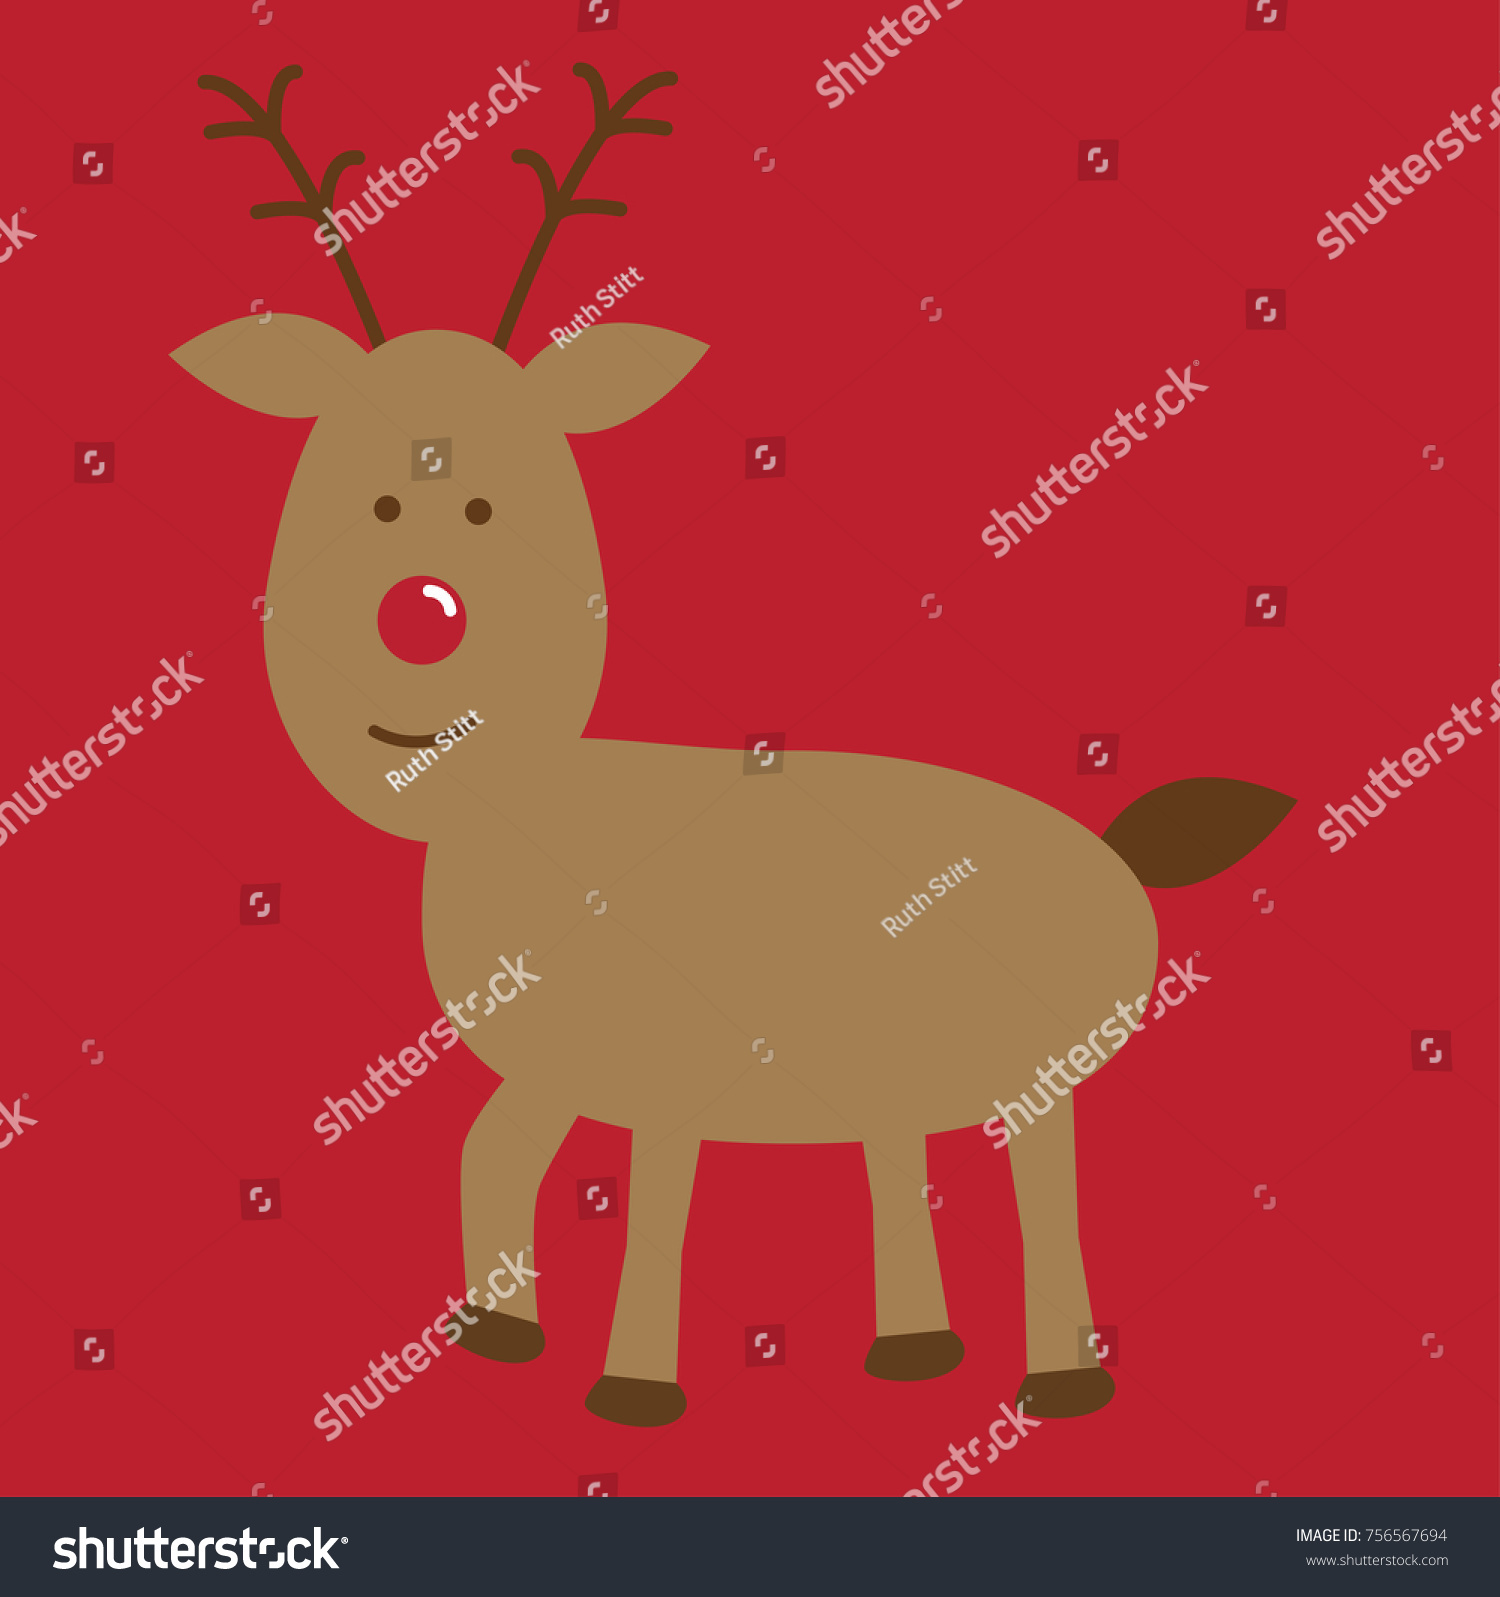 Merry Christmas Reindeer